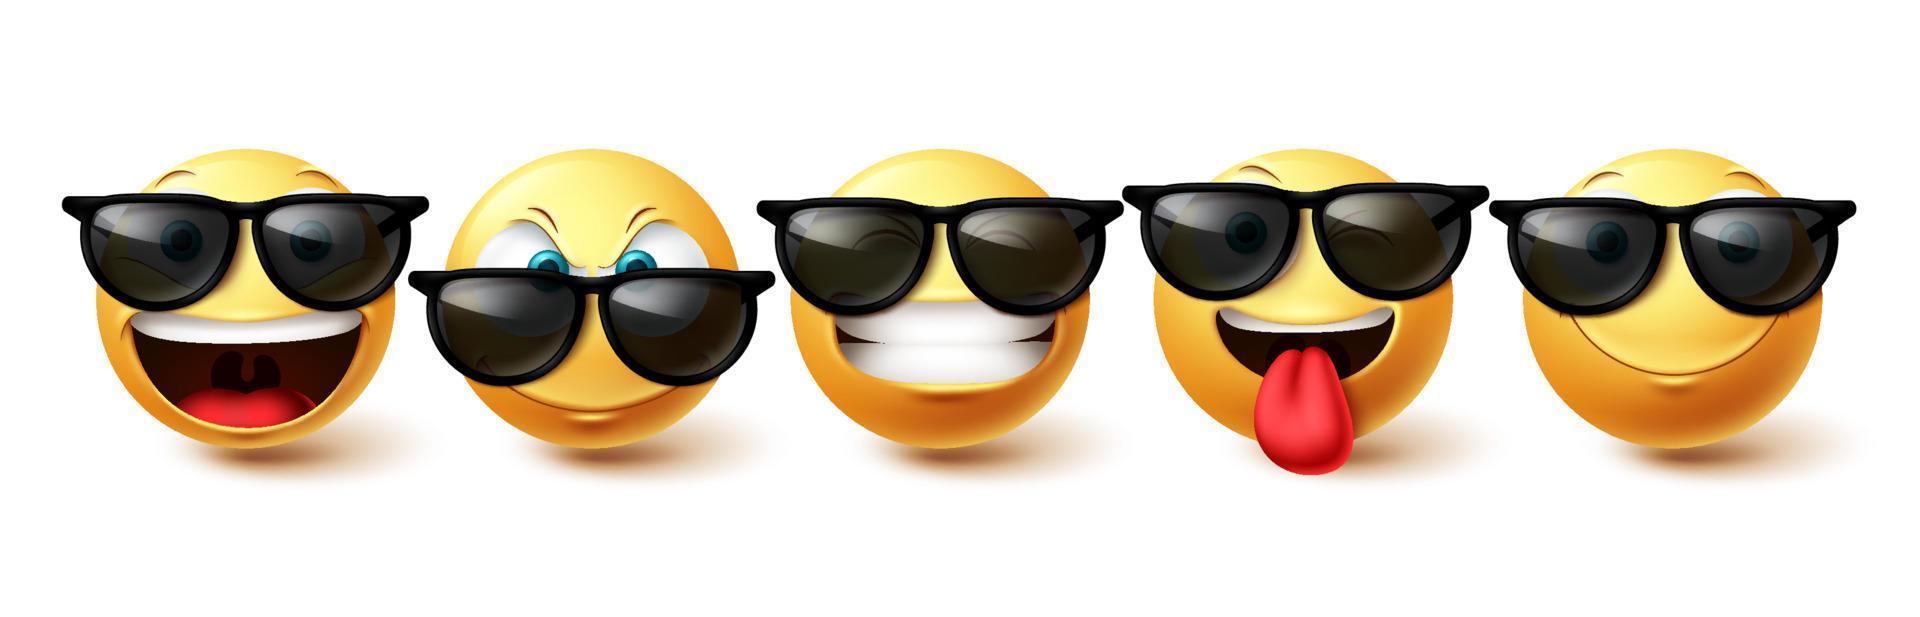 conjunto de vetores de rosto emoji. coleção de rosto legal de emojis em expressões faciais felizes, engraçadas e fofas isoladas no fundo branco para o design de emoticons de personagem. ilustração vetorial